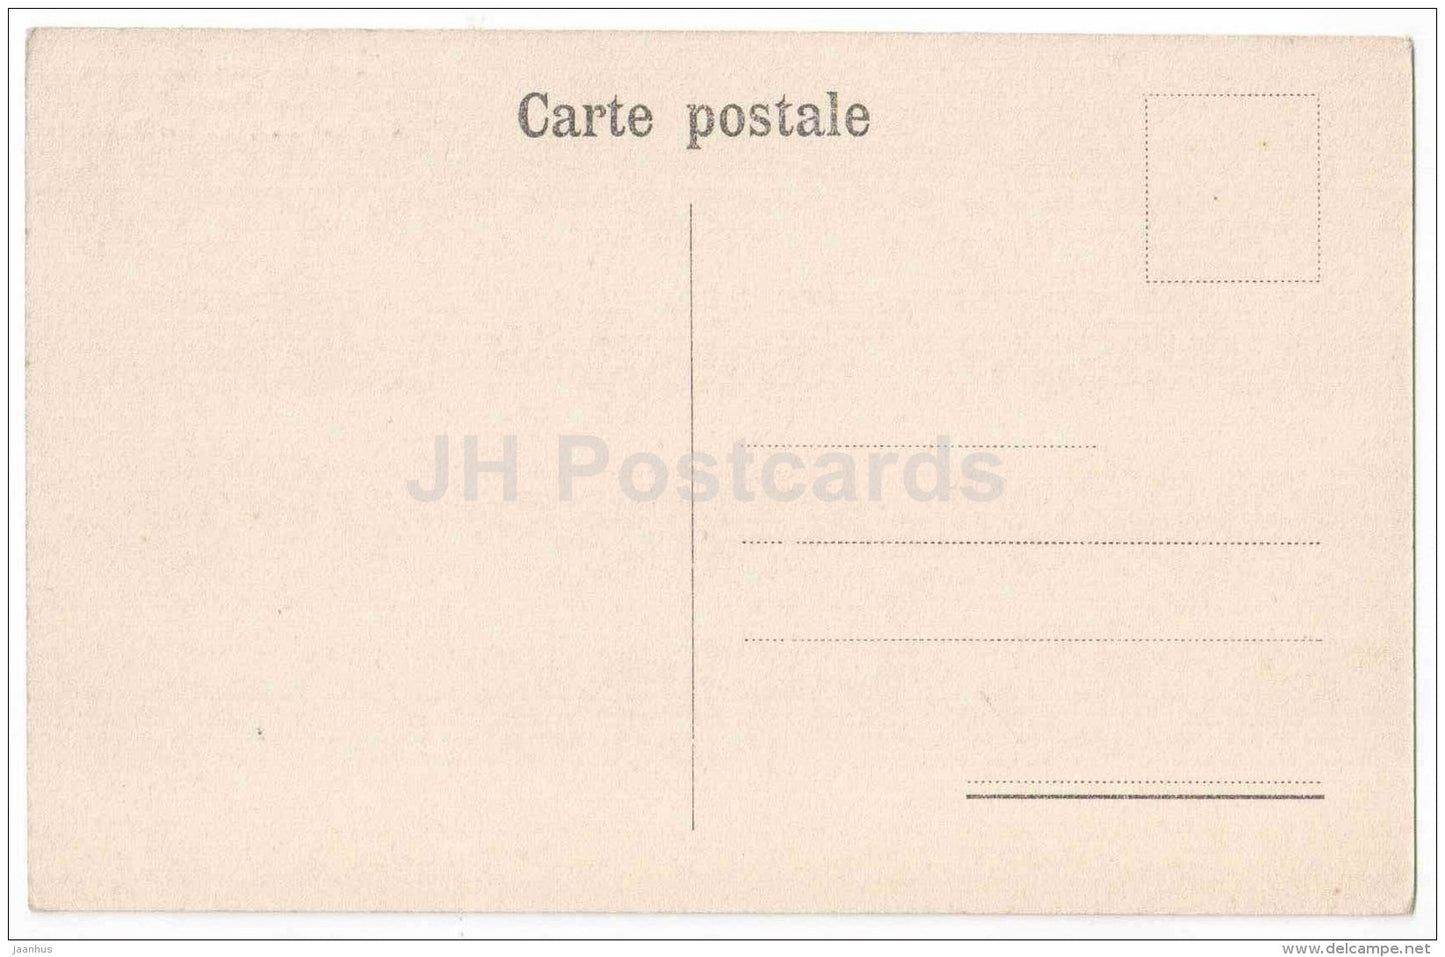 La Pensee - Clinique du prof. Dr. Bourget - clinics - Lausanne - No 2963 - Switzerland - old postcard - unused - JH Postcards